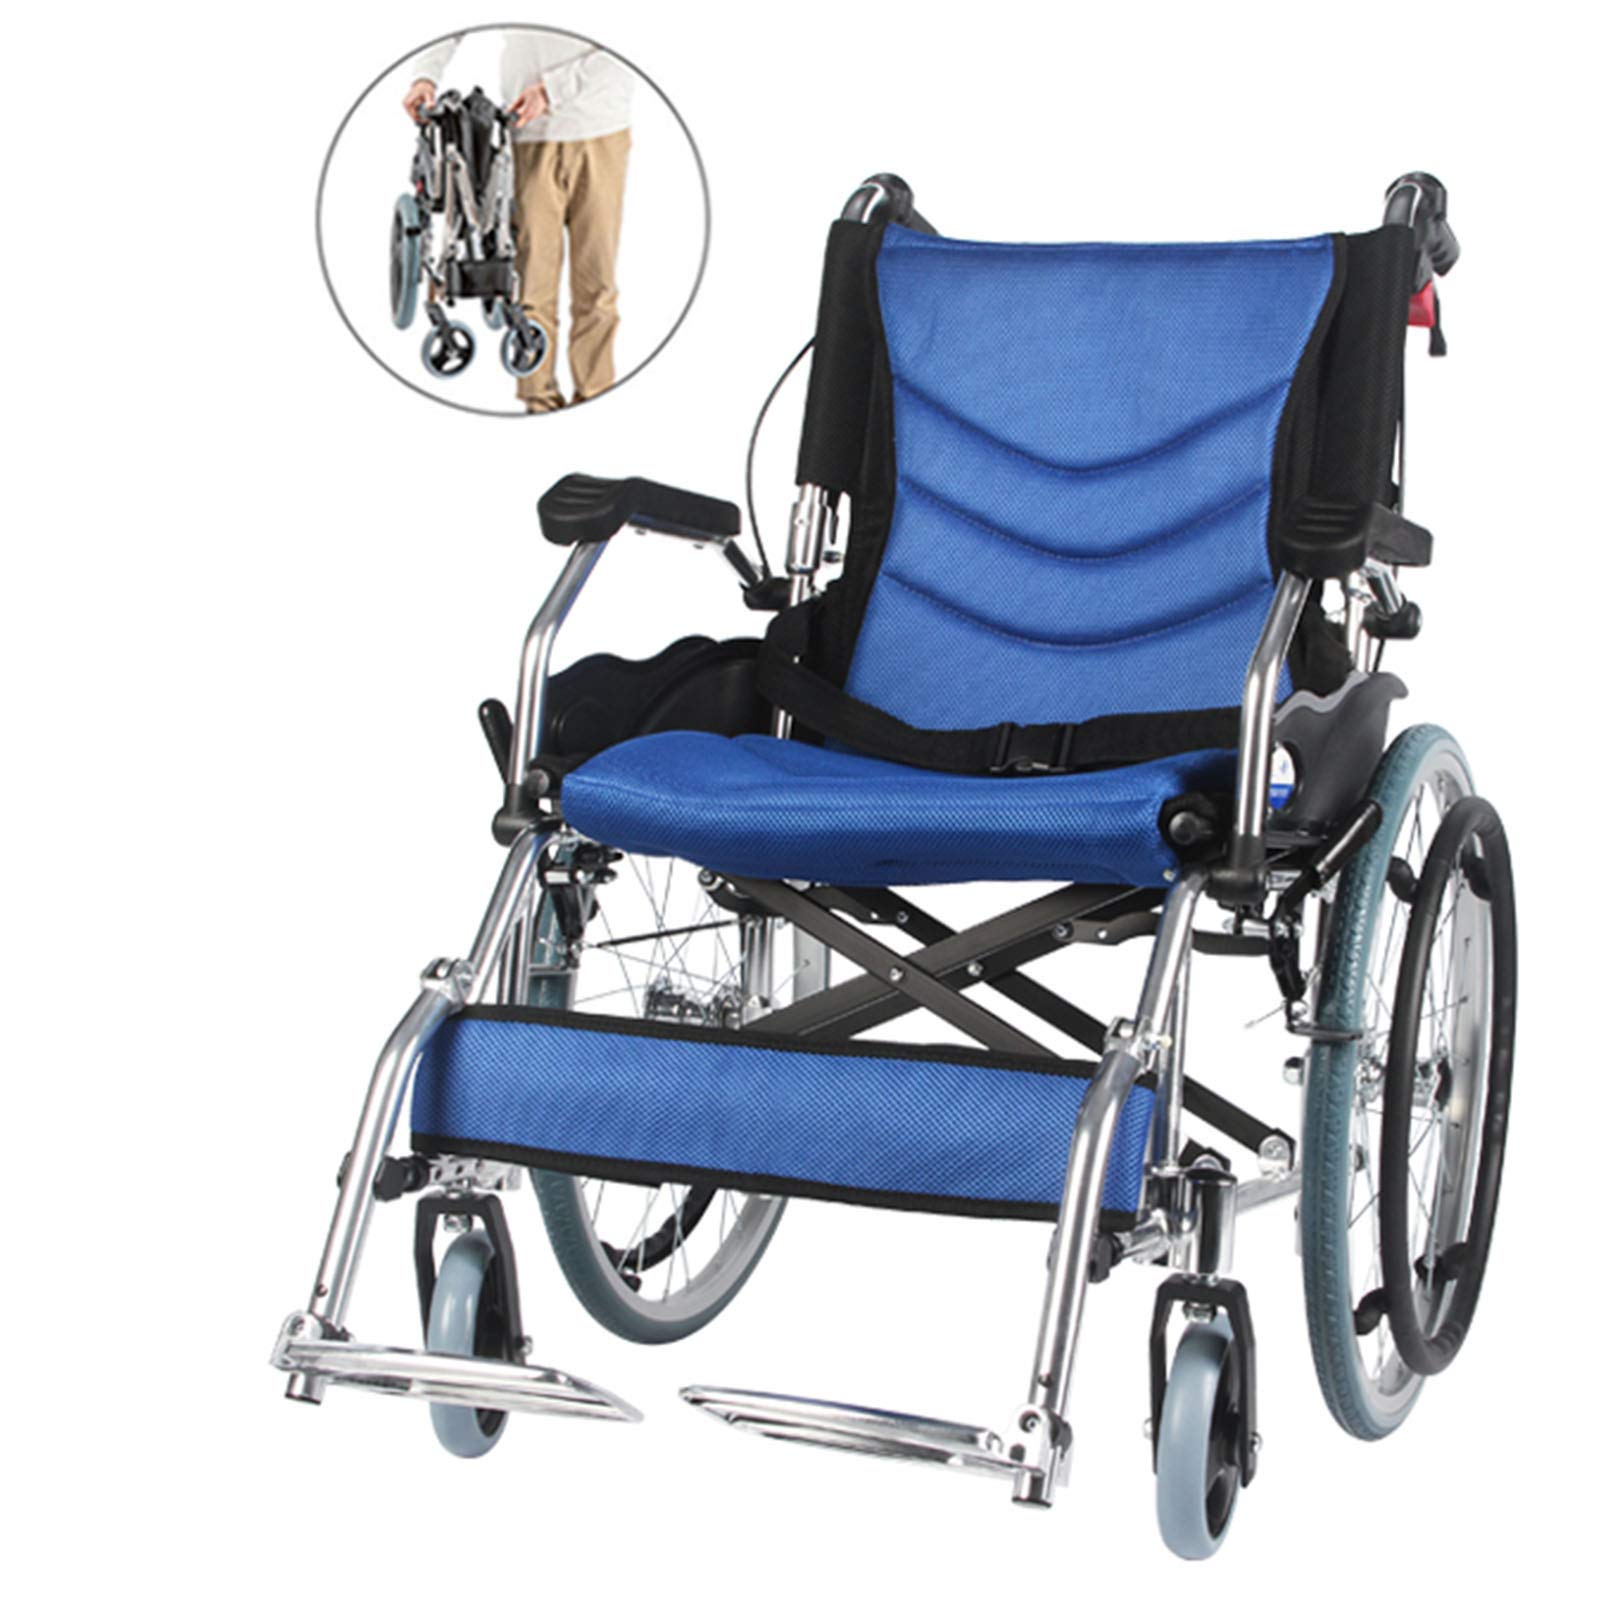 Leichter Aluminiumrollstuhl Mit Begleitenden Handbremsen,Selbstfahrrollstuhl Manuelle Rollstühle Für Behinderte Und Ältere Menschen